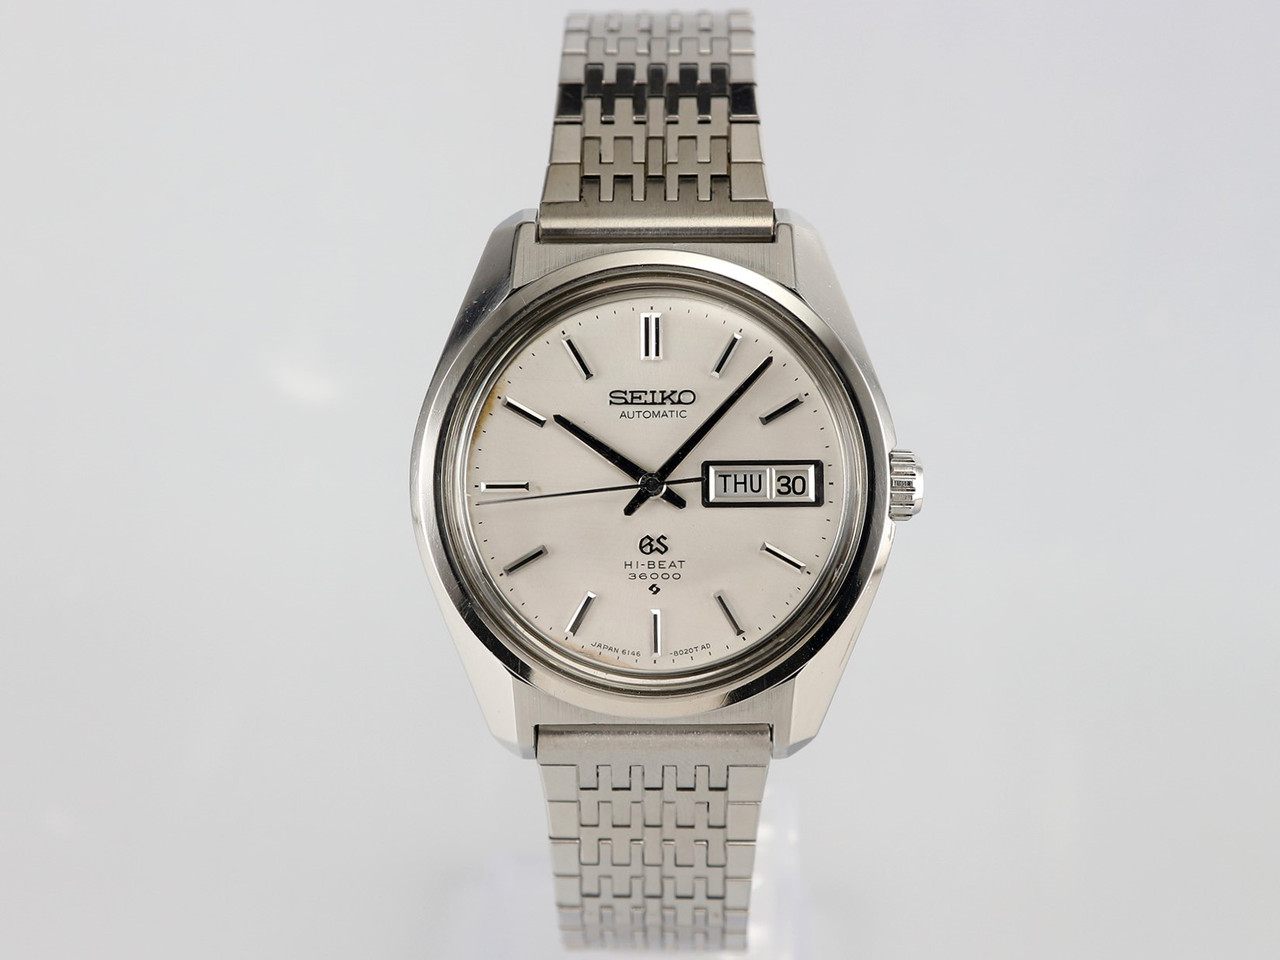 Seiko Grand Seiko GS61 Hi-Beat 36000 bph VWS-1781 - Vintage Watch Services